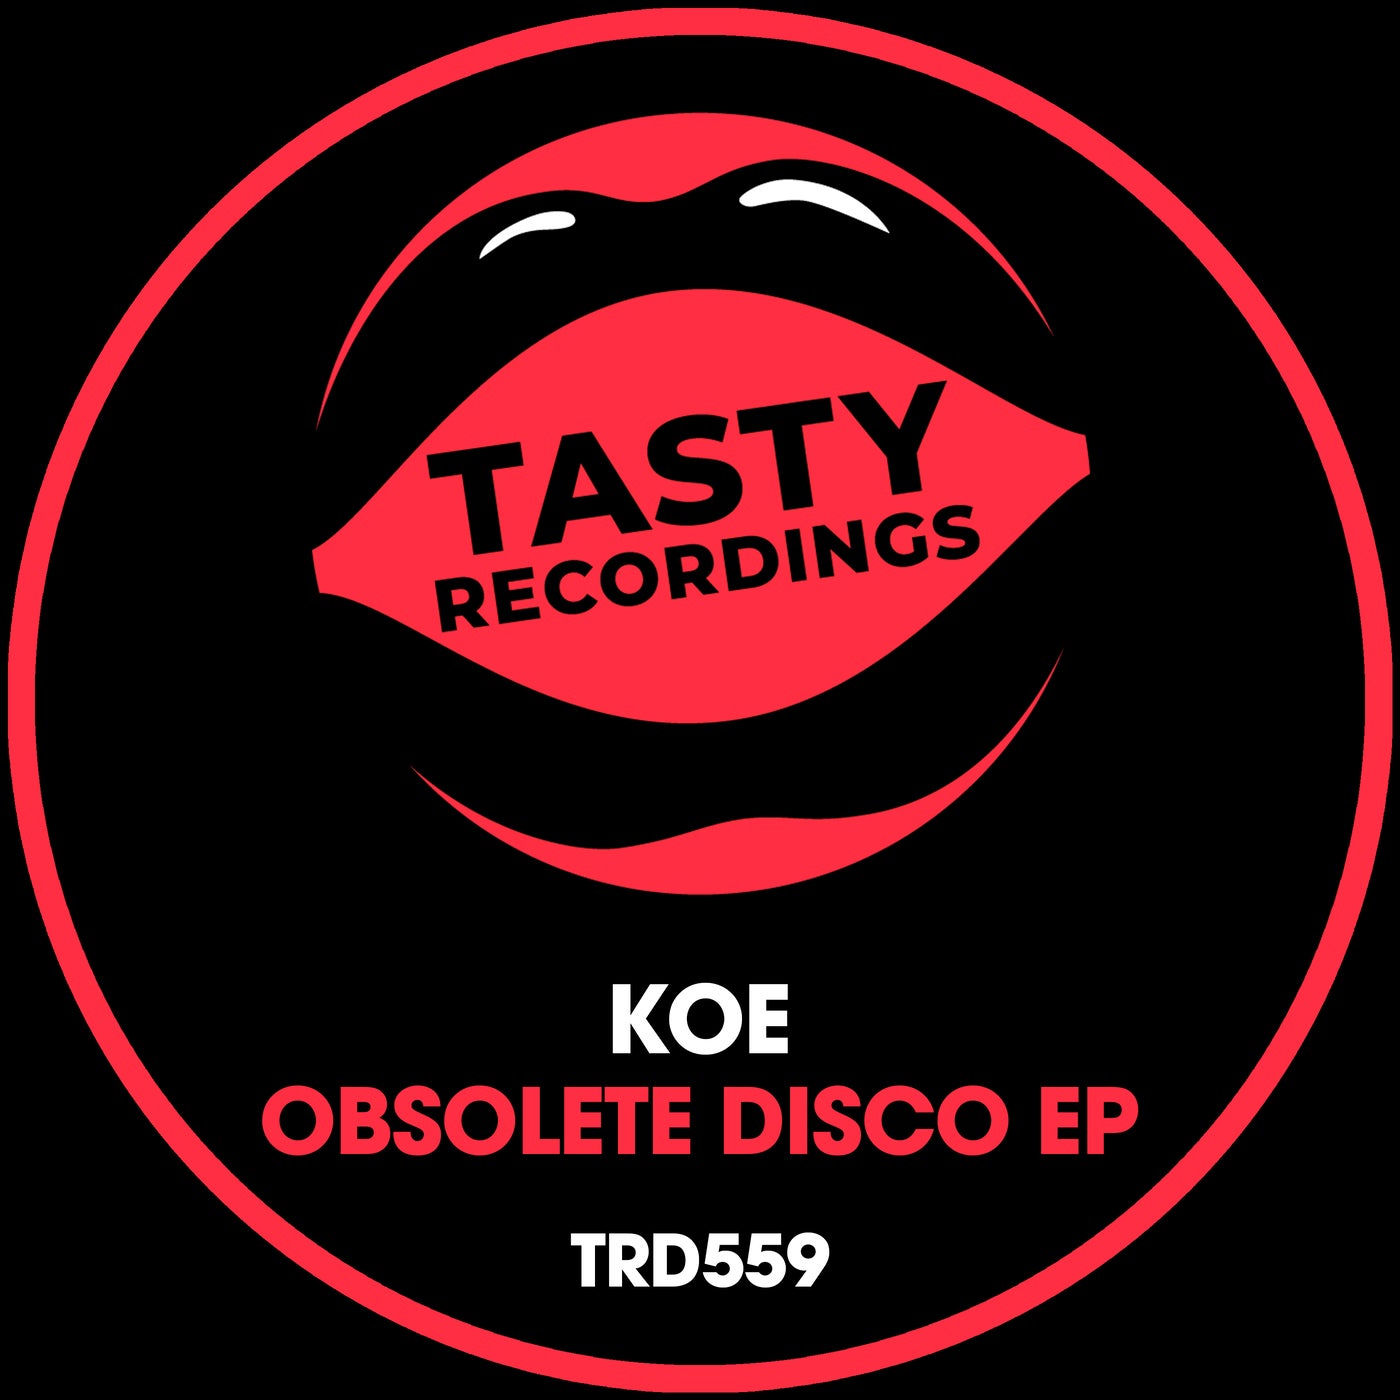 Obsolete Disco EP